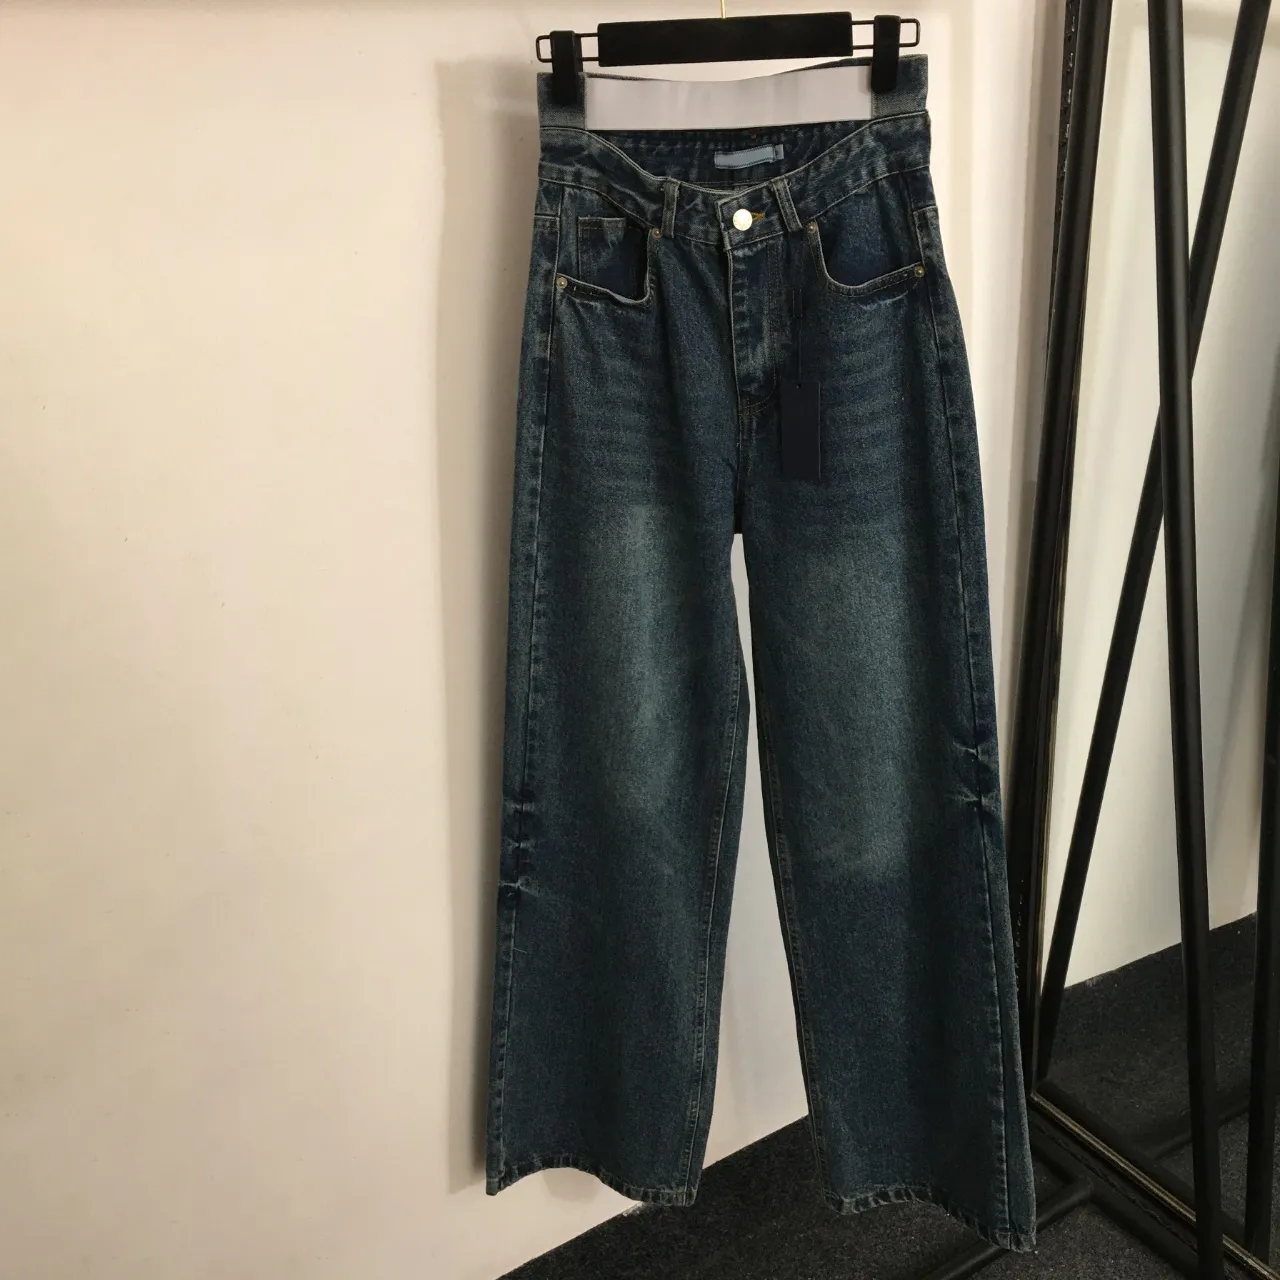 Letras clássicas tecer calças femininas de luxo calças jeans cintura alta calças compridas personalidade solta padrão jean pant